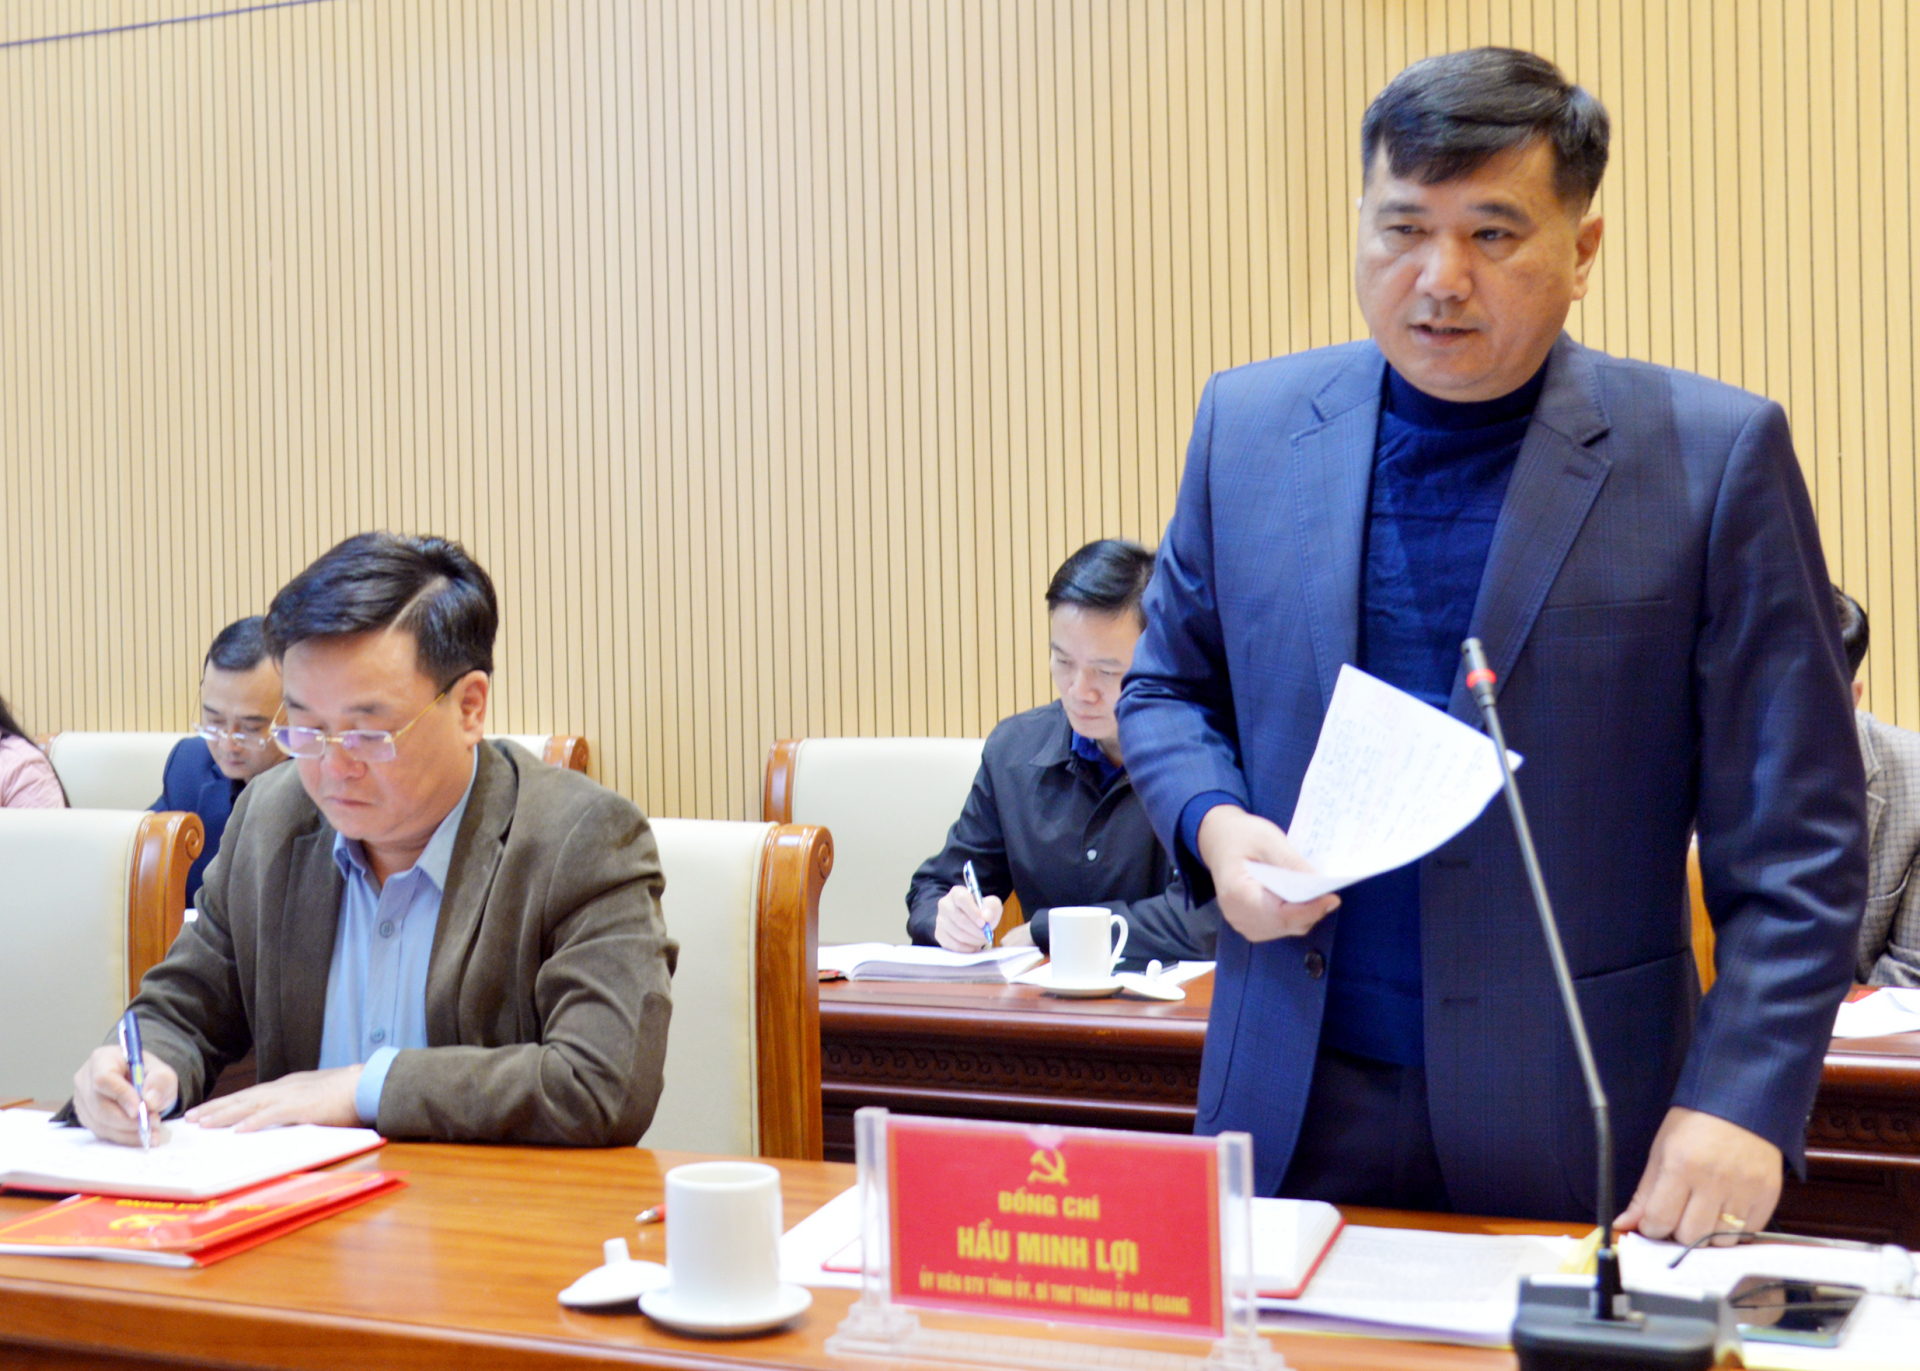 Bí thư Thành ủy Hầu Minh Lợi phát biểu tại buổi làm việc.